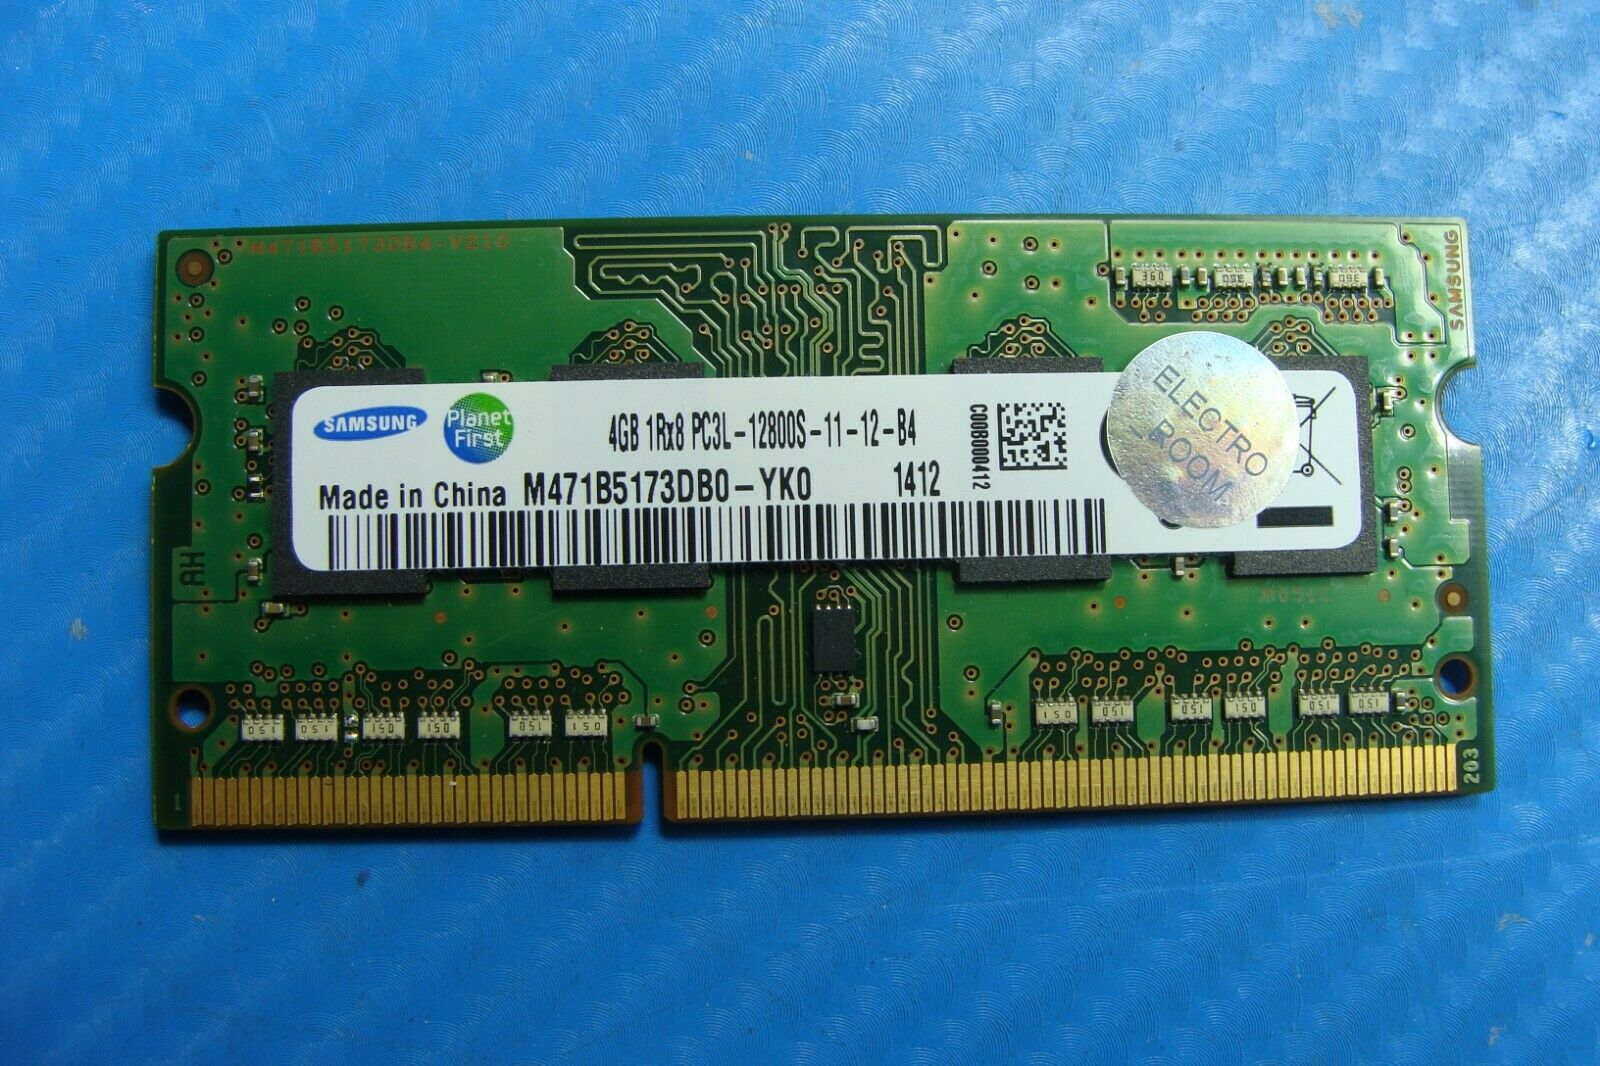 HP 15-f009wm Laptop Samsung 4GB Memory pc3l-12800s-11-12-b4 m471b5173db0-yk0 